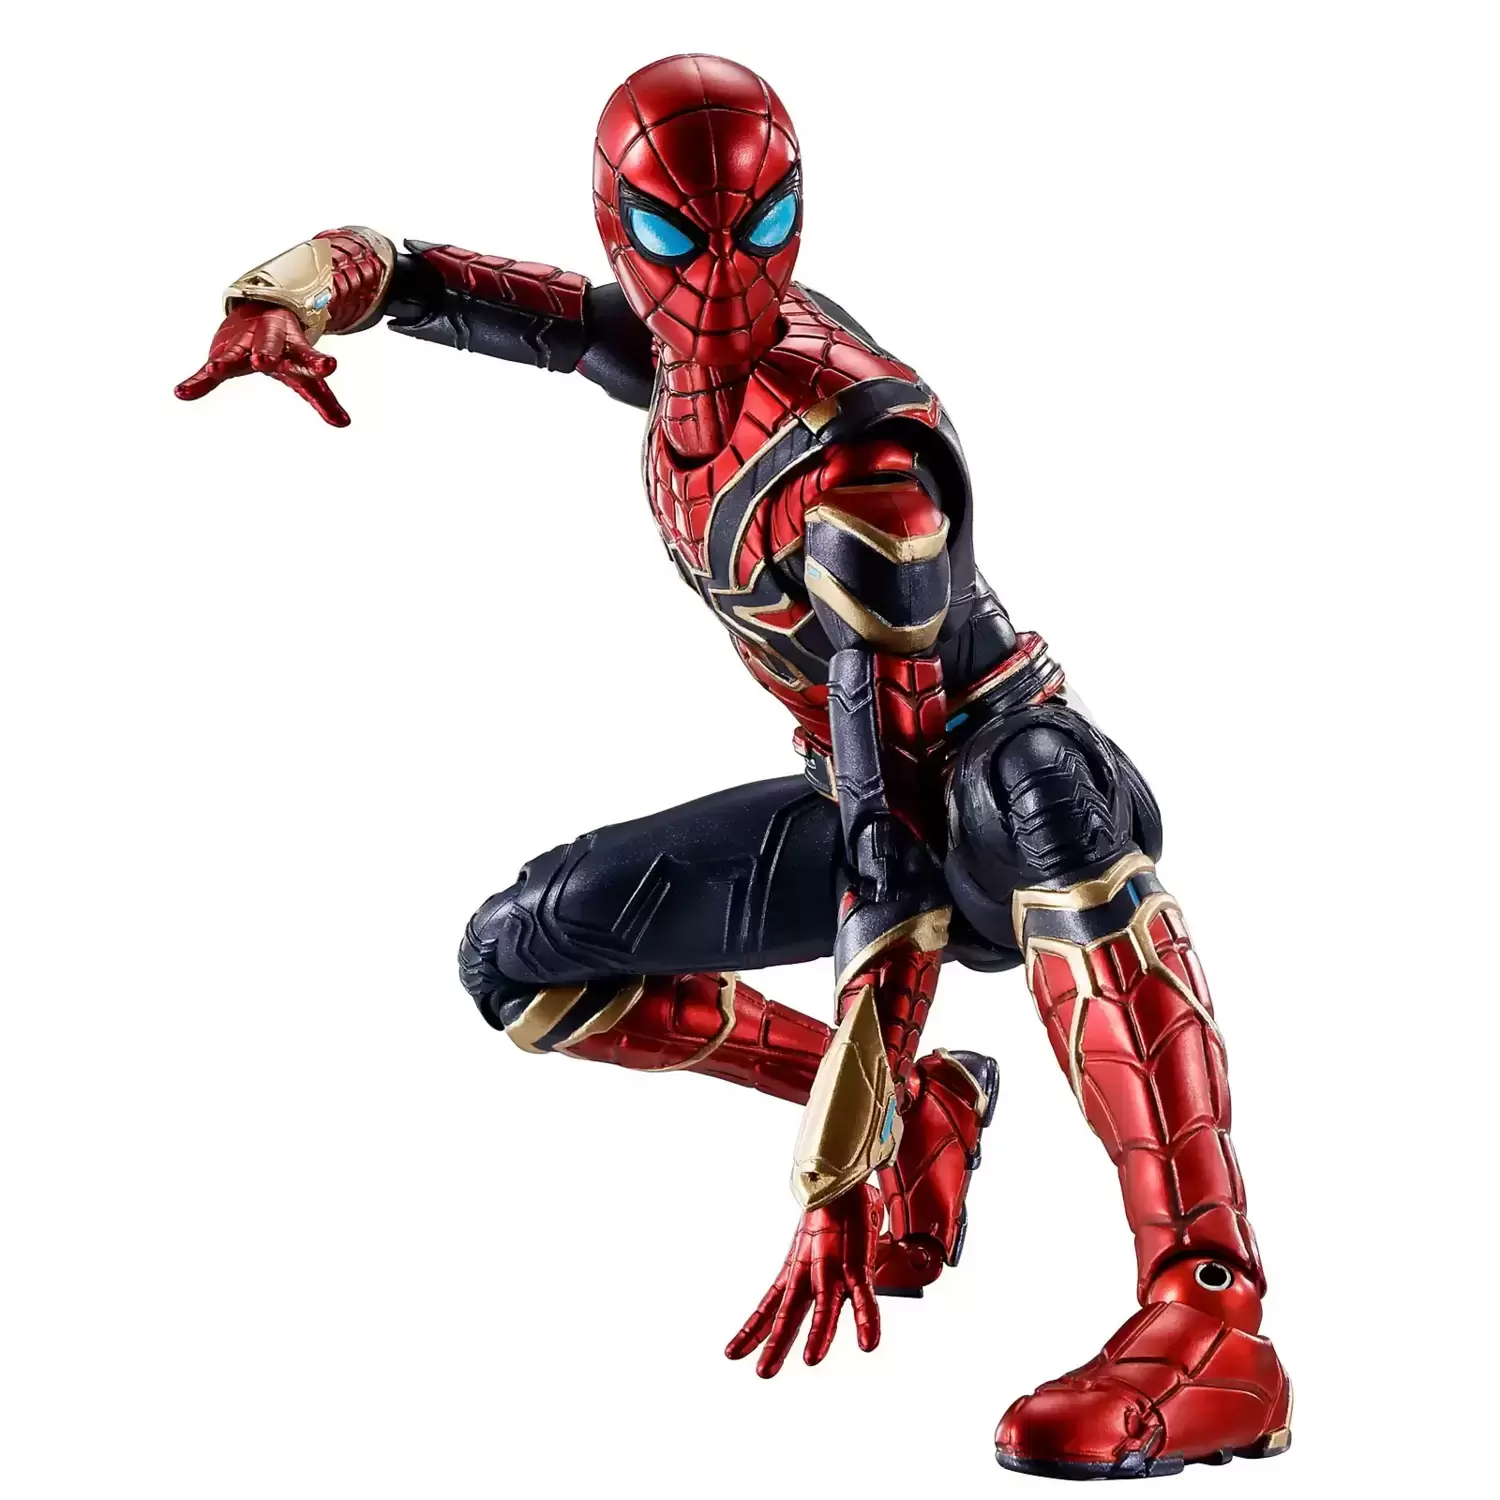 S.H. Figuarts Marvel - Iron Spider - Spider-Man: No Way Home